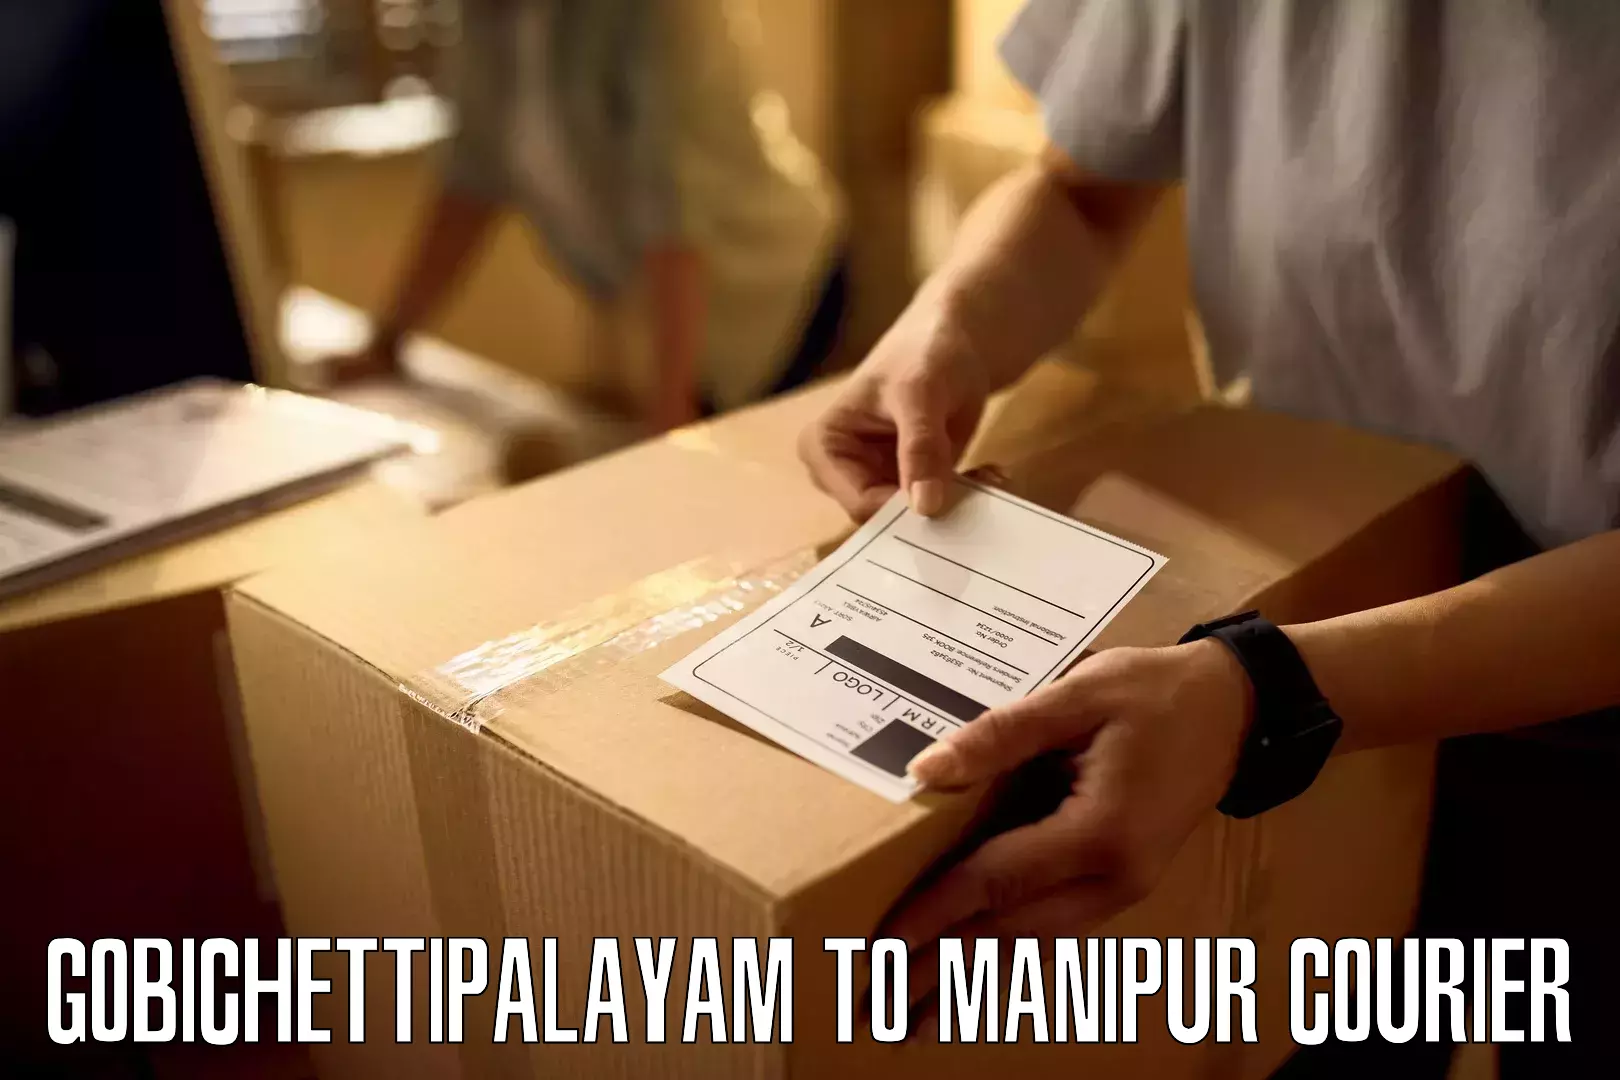 Overnight delivery services Gobichettipalayam to Senapati